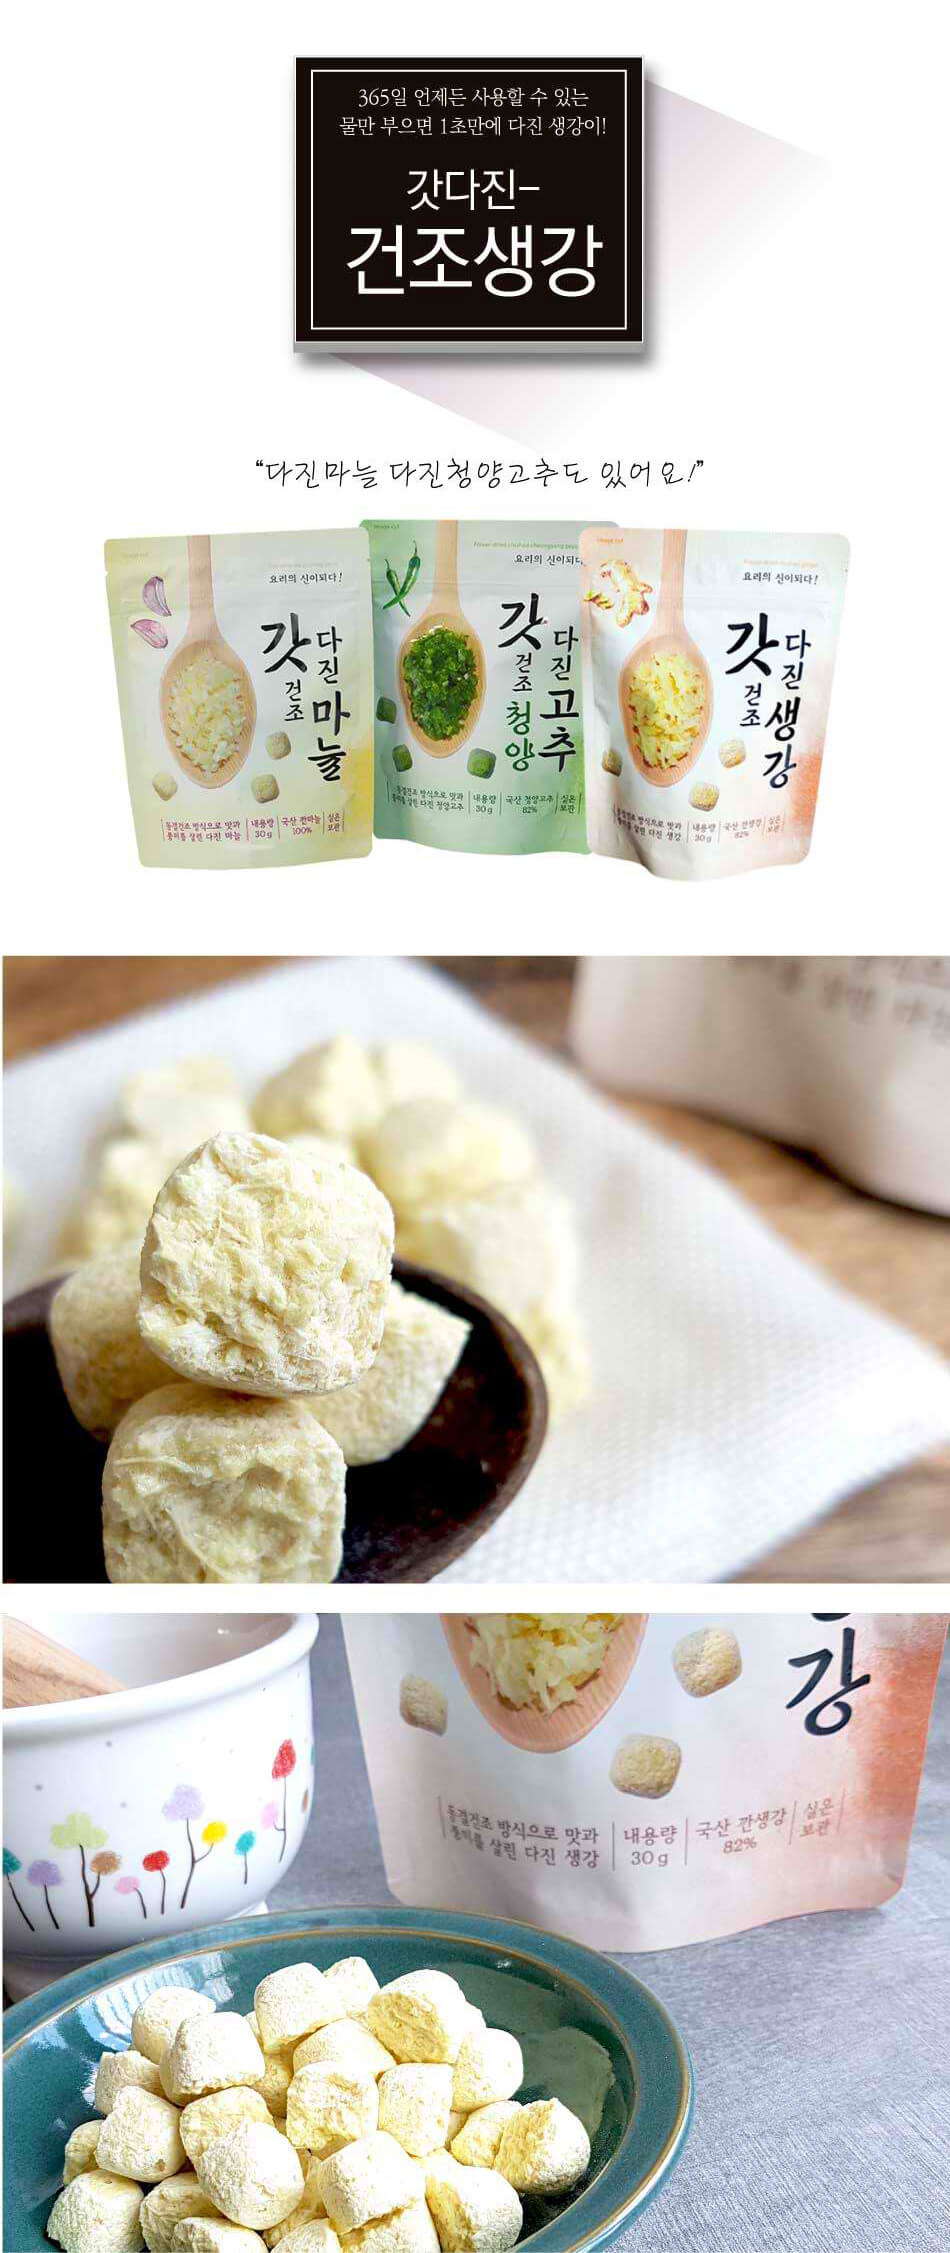 韓國食品-[Fnd] Dried Ginger Cube 30g